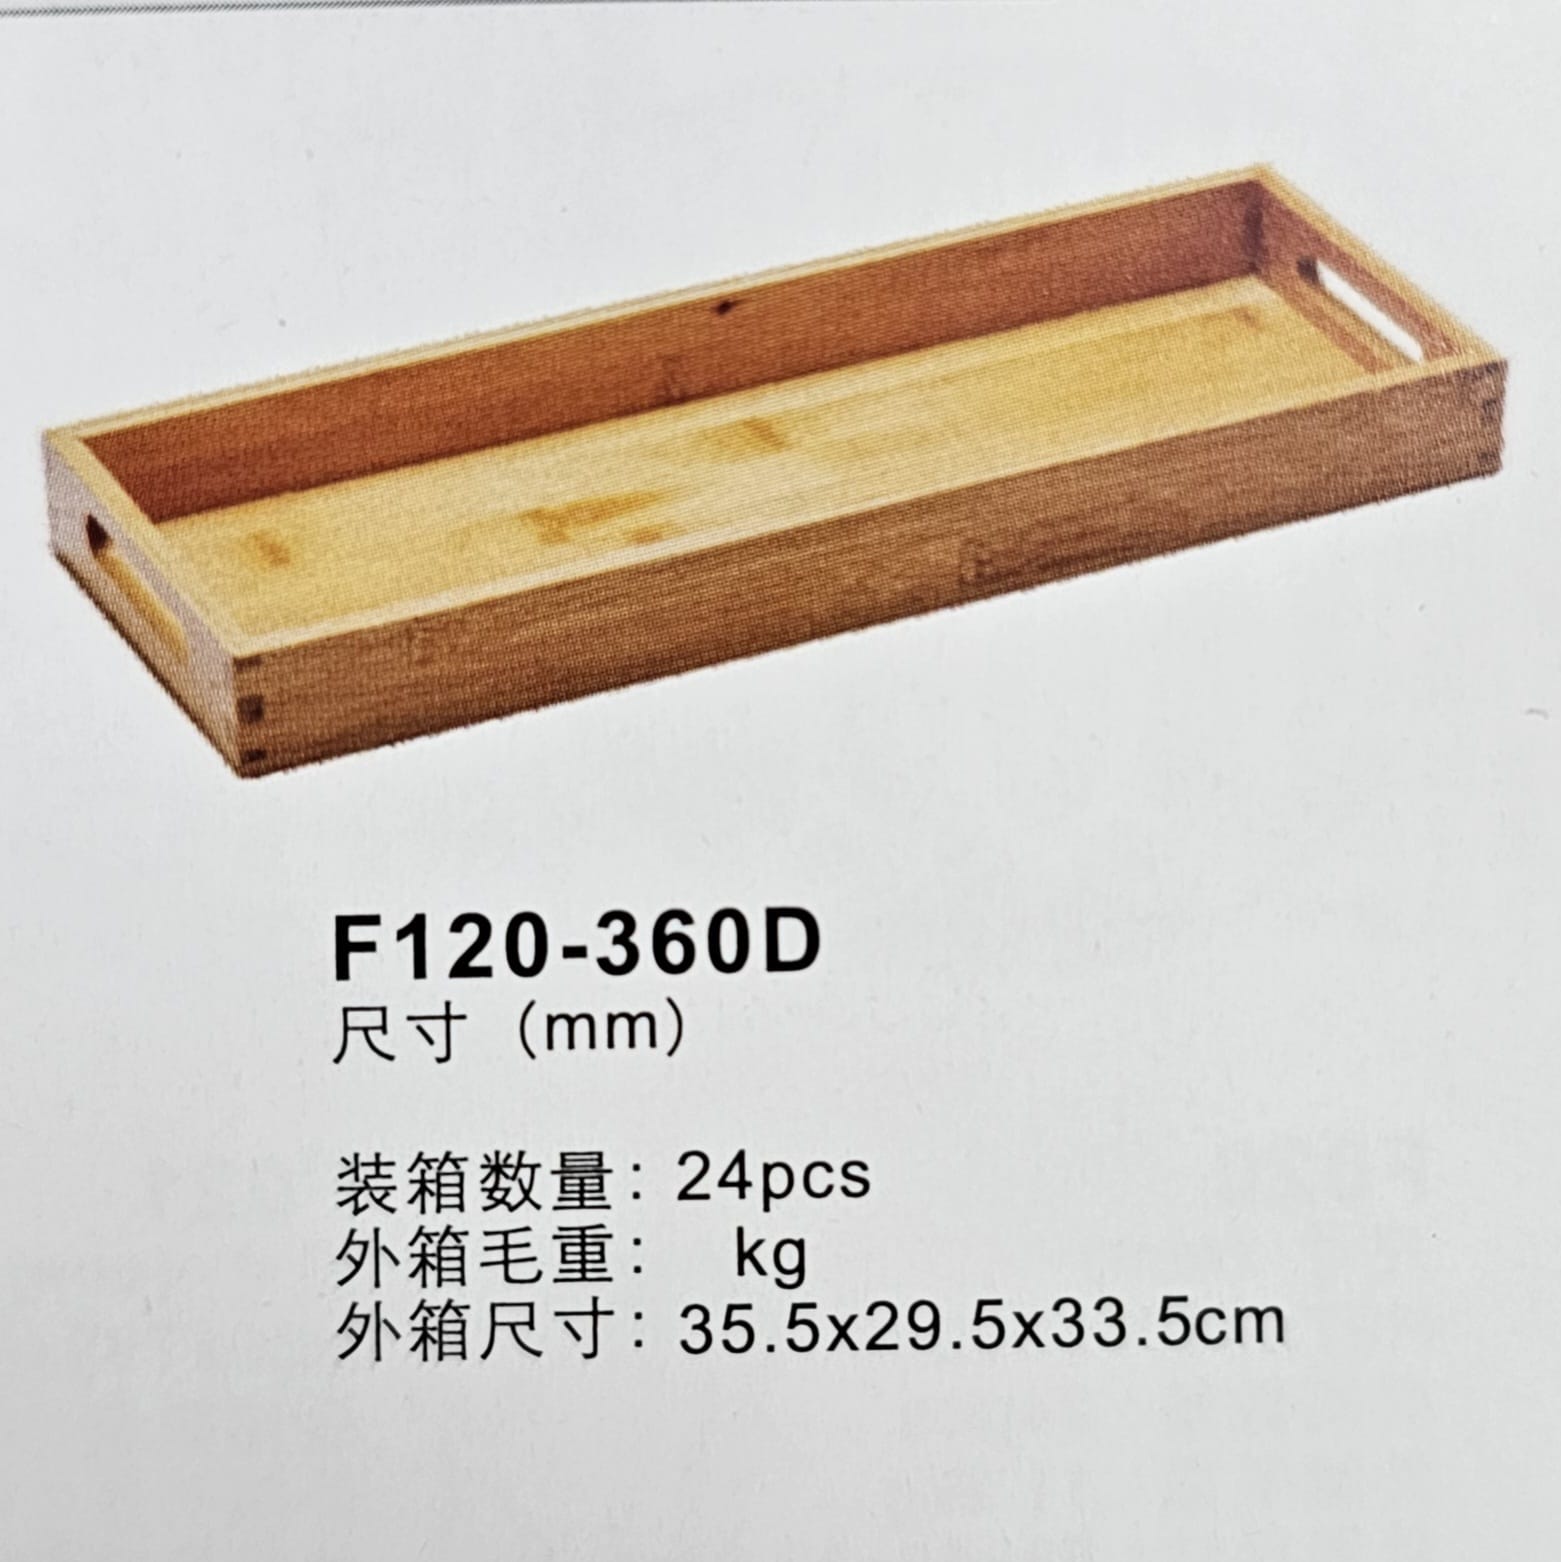 מגש עץ עם ידיות ‎ 30X10X3.5H ס"מ